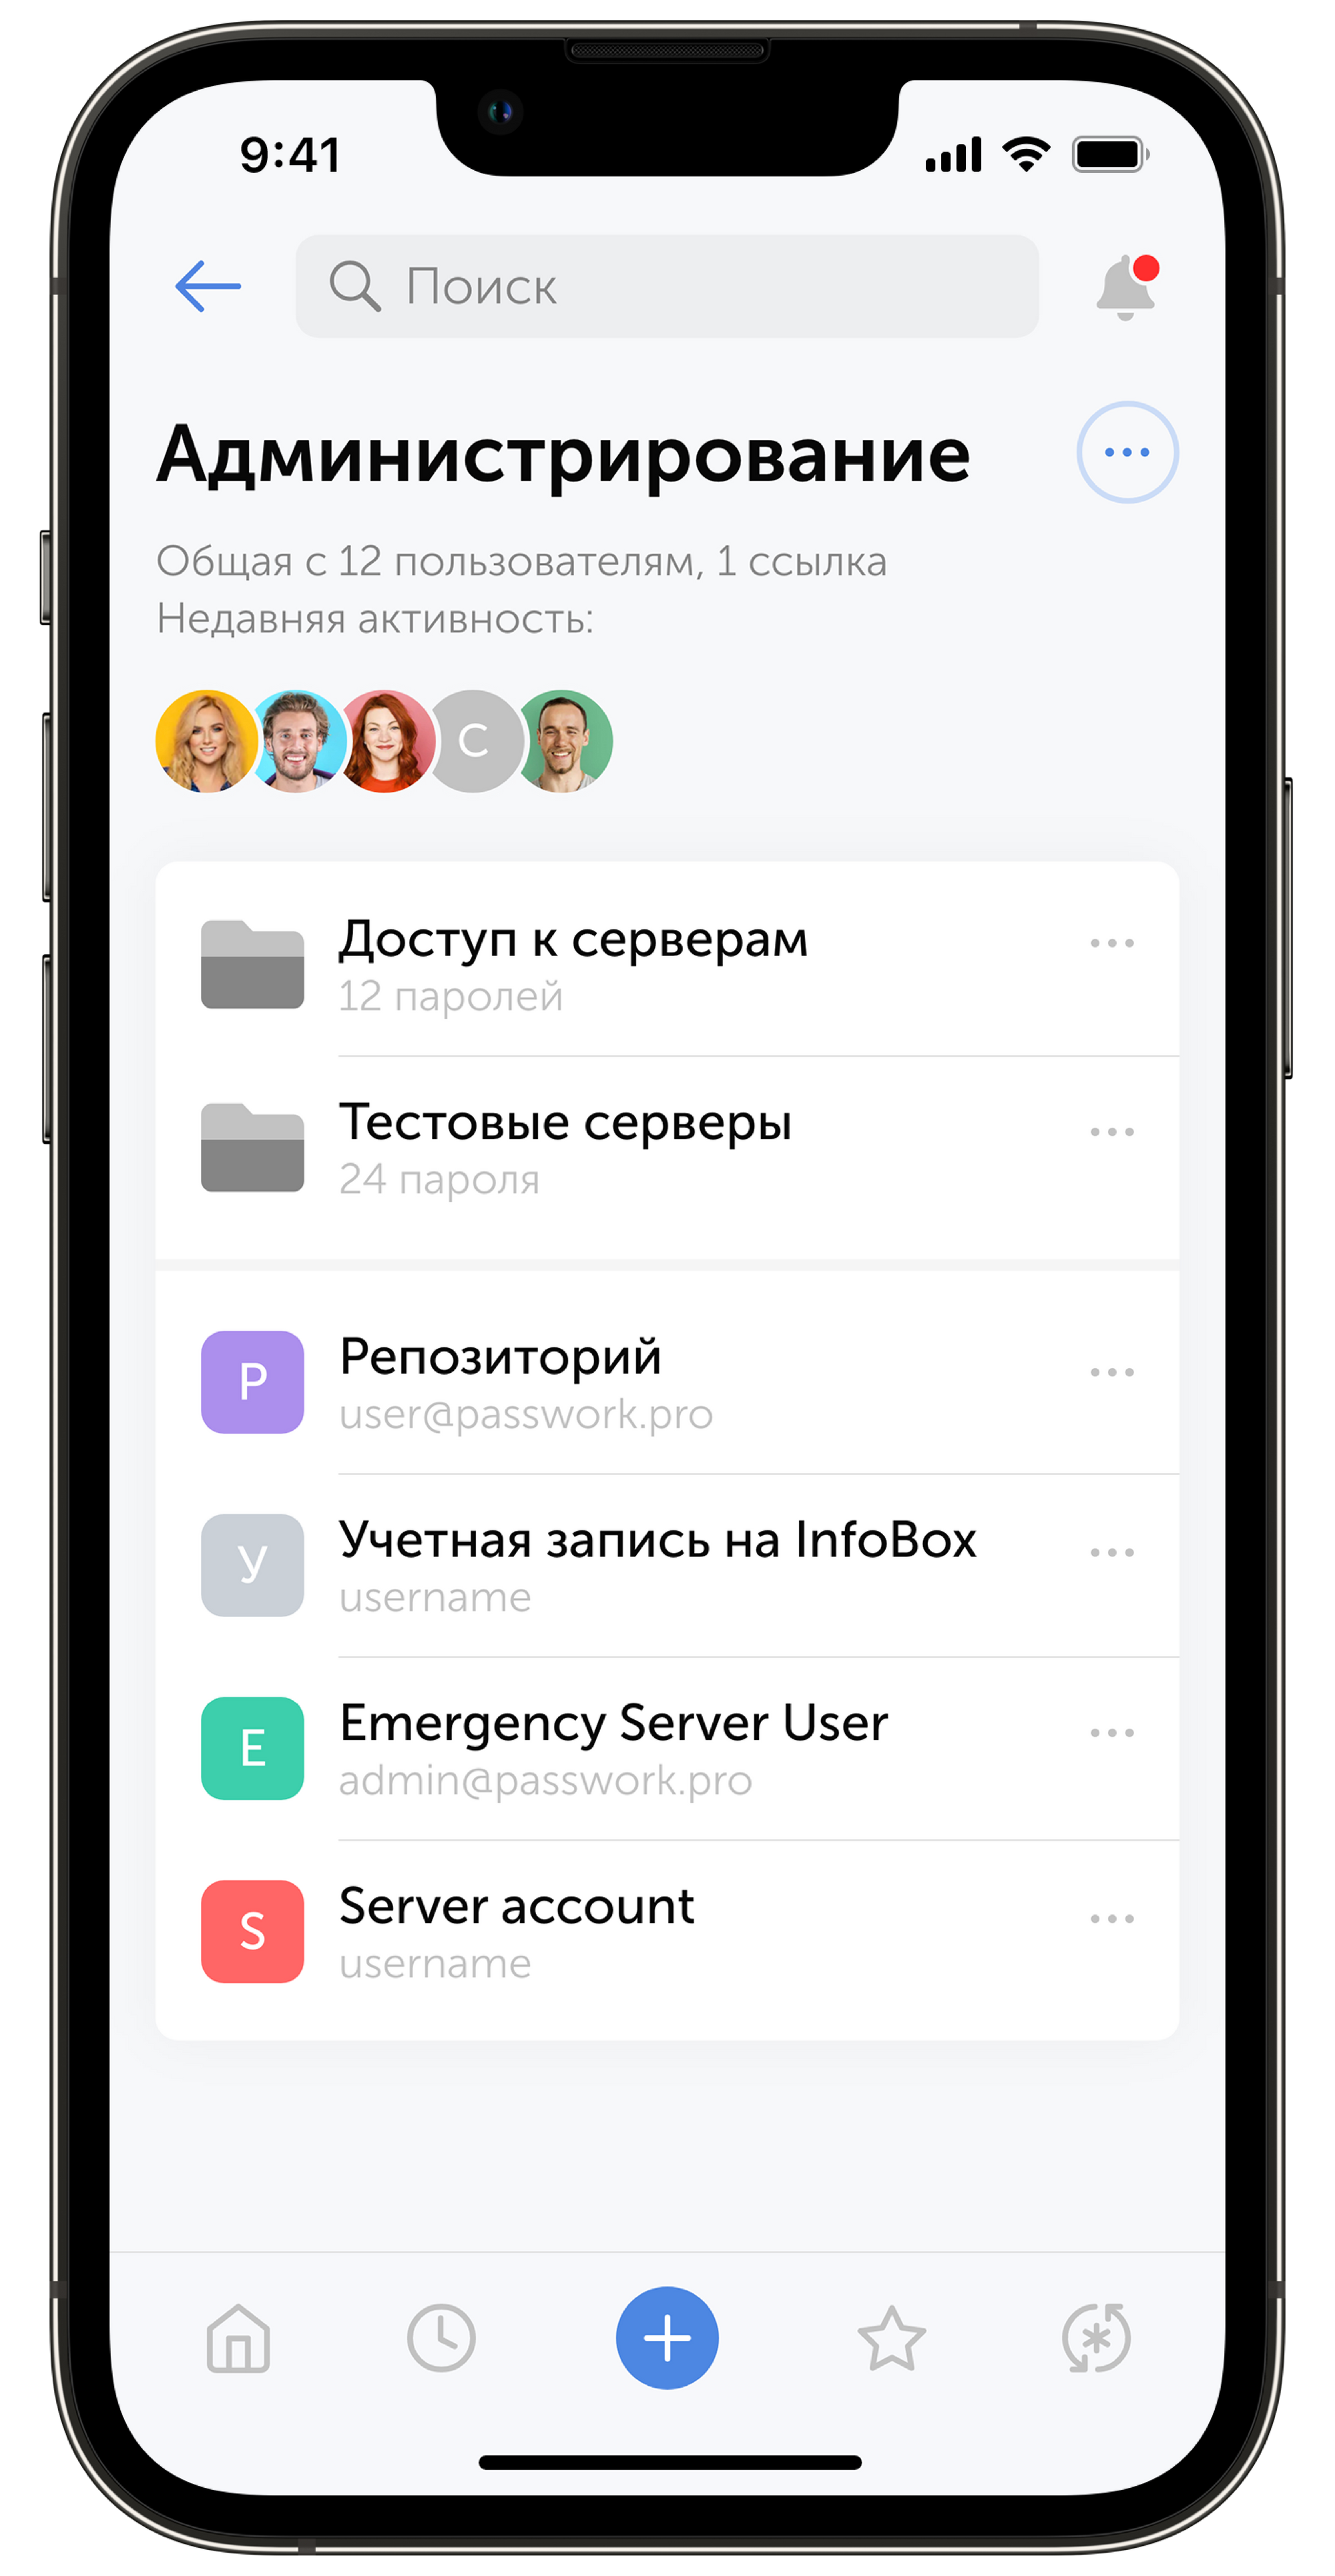 mobile app